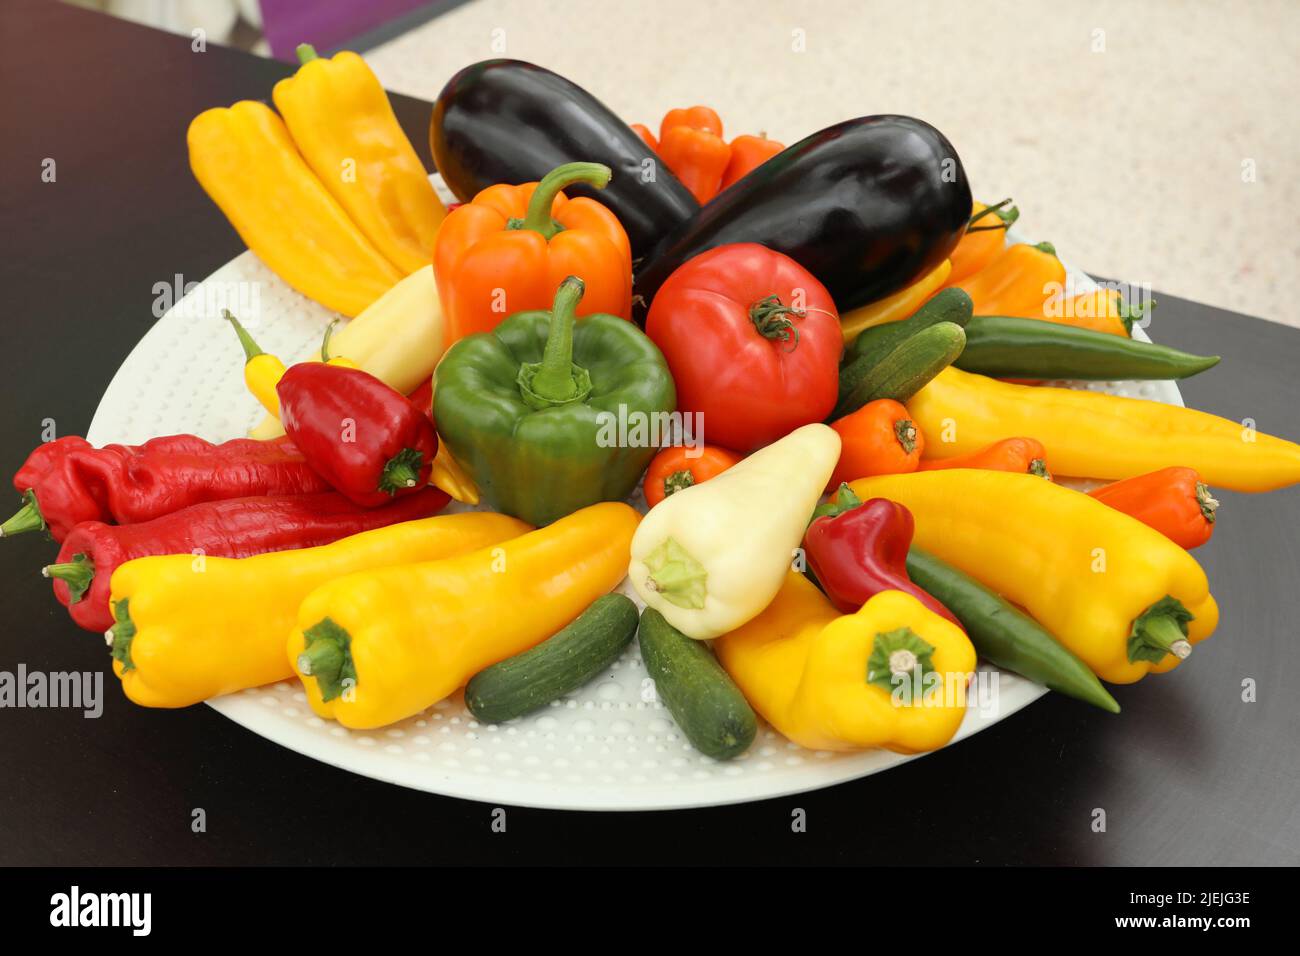 Assiette blanche de légumes avec poivrons, poivre jaune, aubergine sur une table noire Banque D'Images